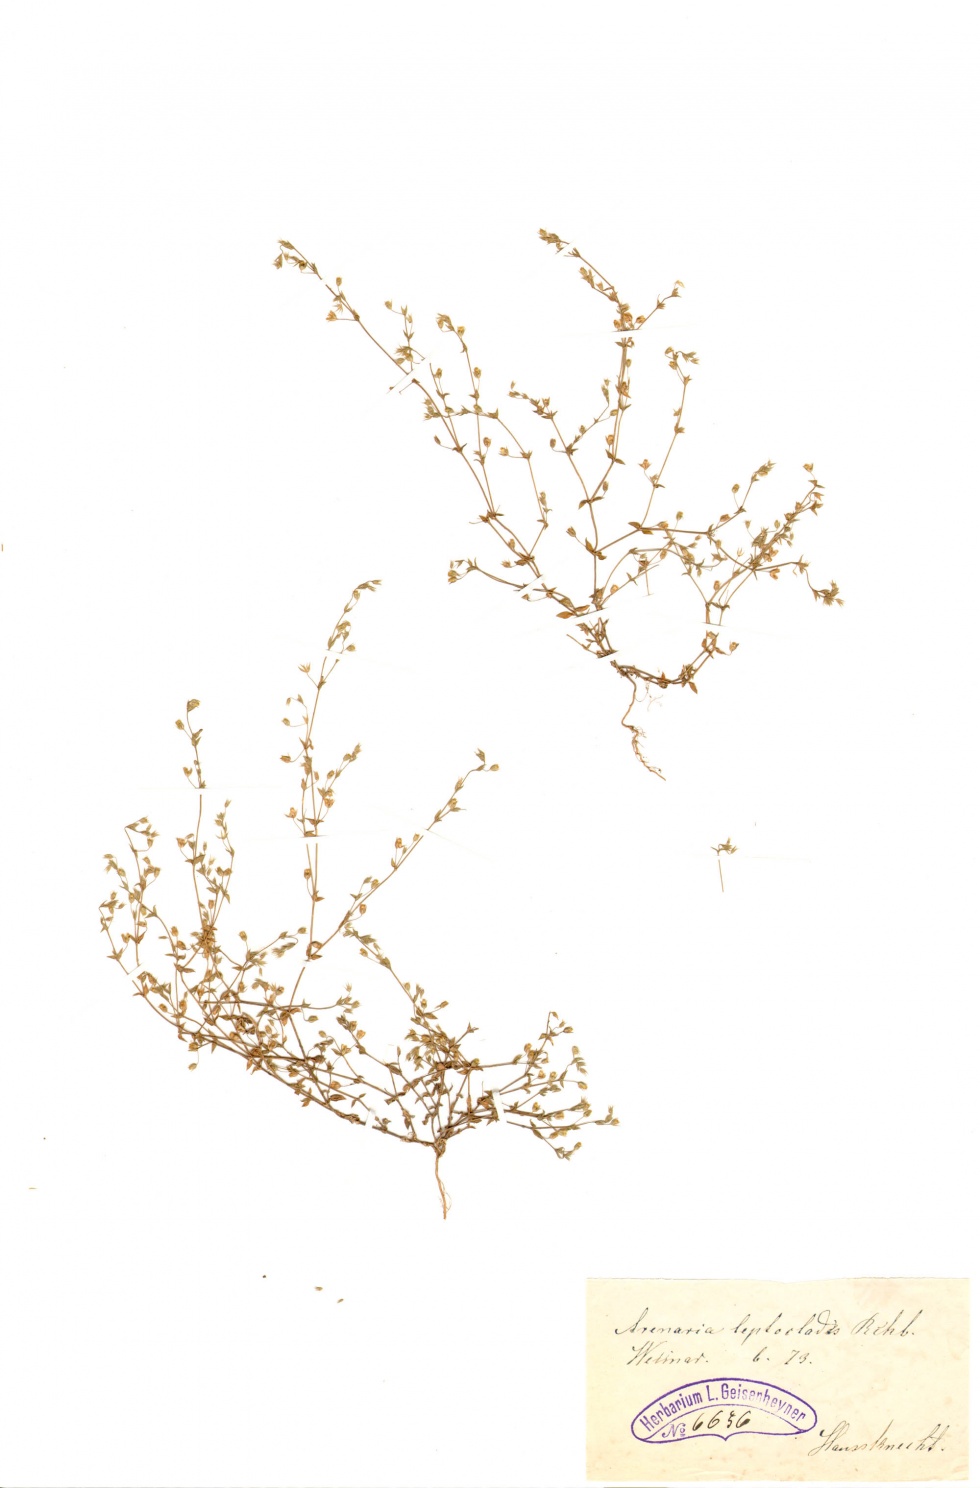 Dünnstängeliges Sandkraut - Arenaria leptoclados (Rchb.) Guss. (Naturhistorisches Museum Mainz / Landessammlung für Naturkunde Rheinland-Pfalz CC BY-NC-SA)